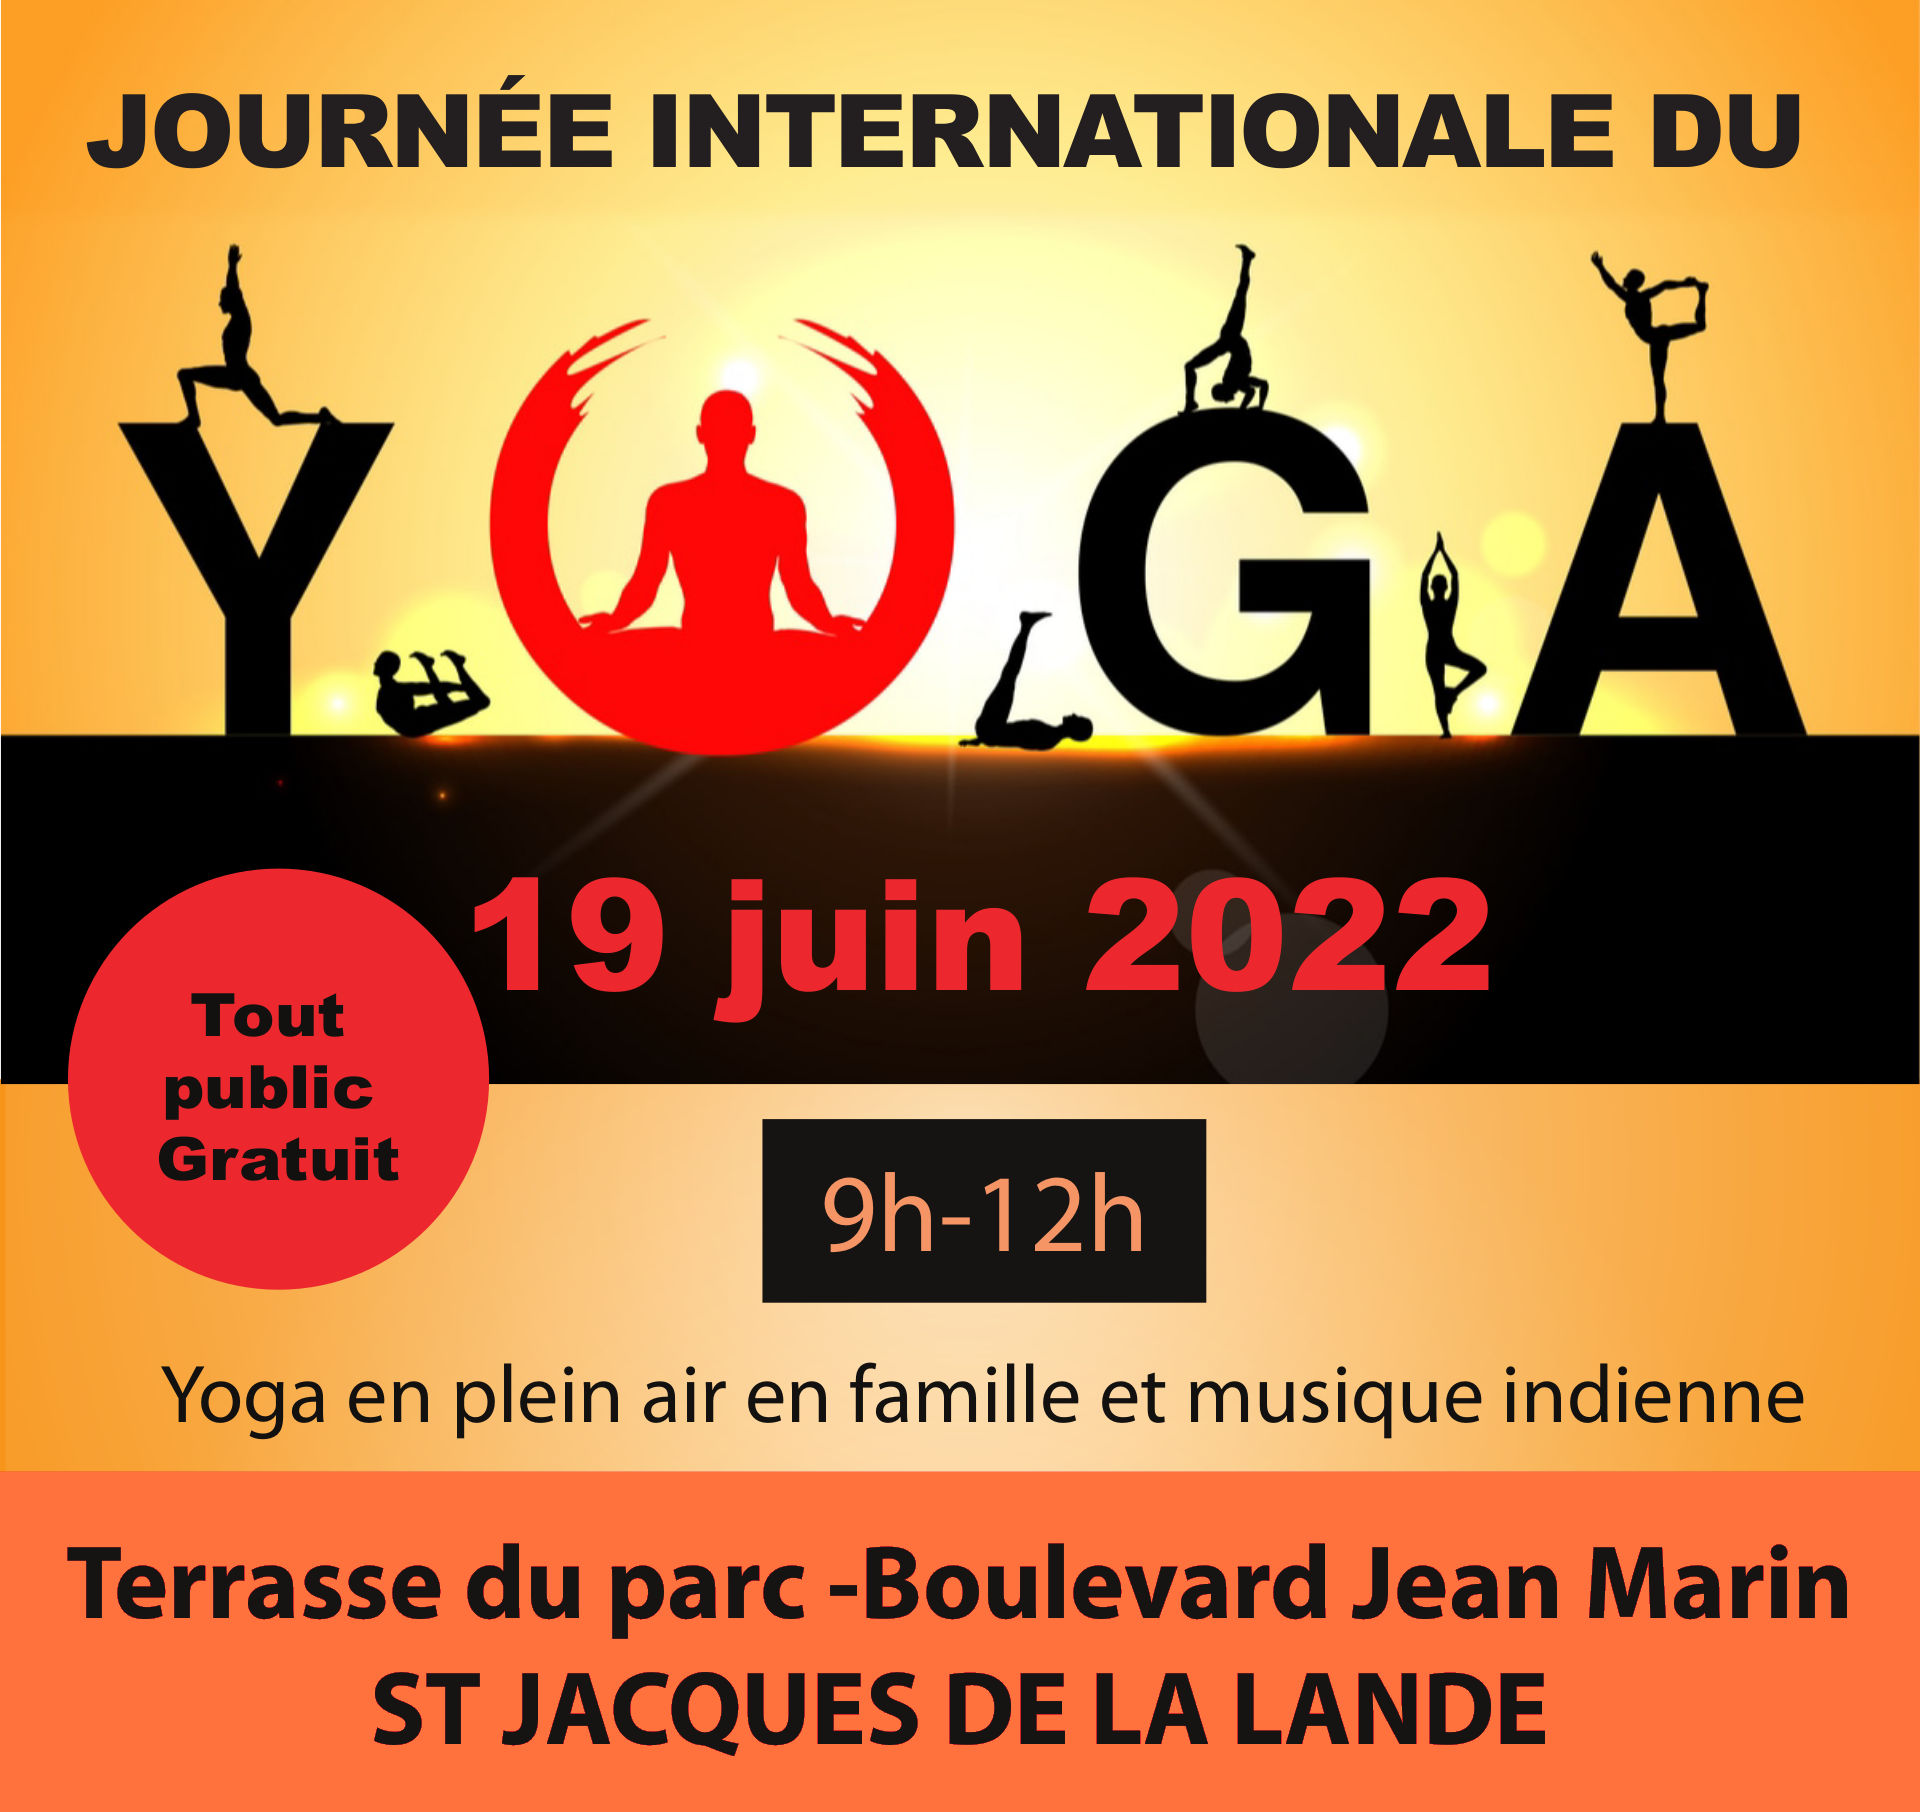 Yoga à St Jacques de la Lande le 19 juin 2022